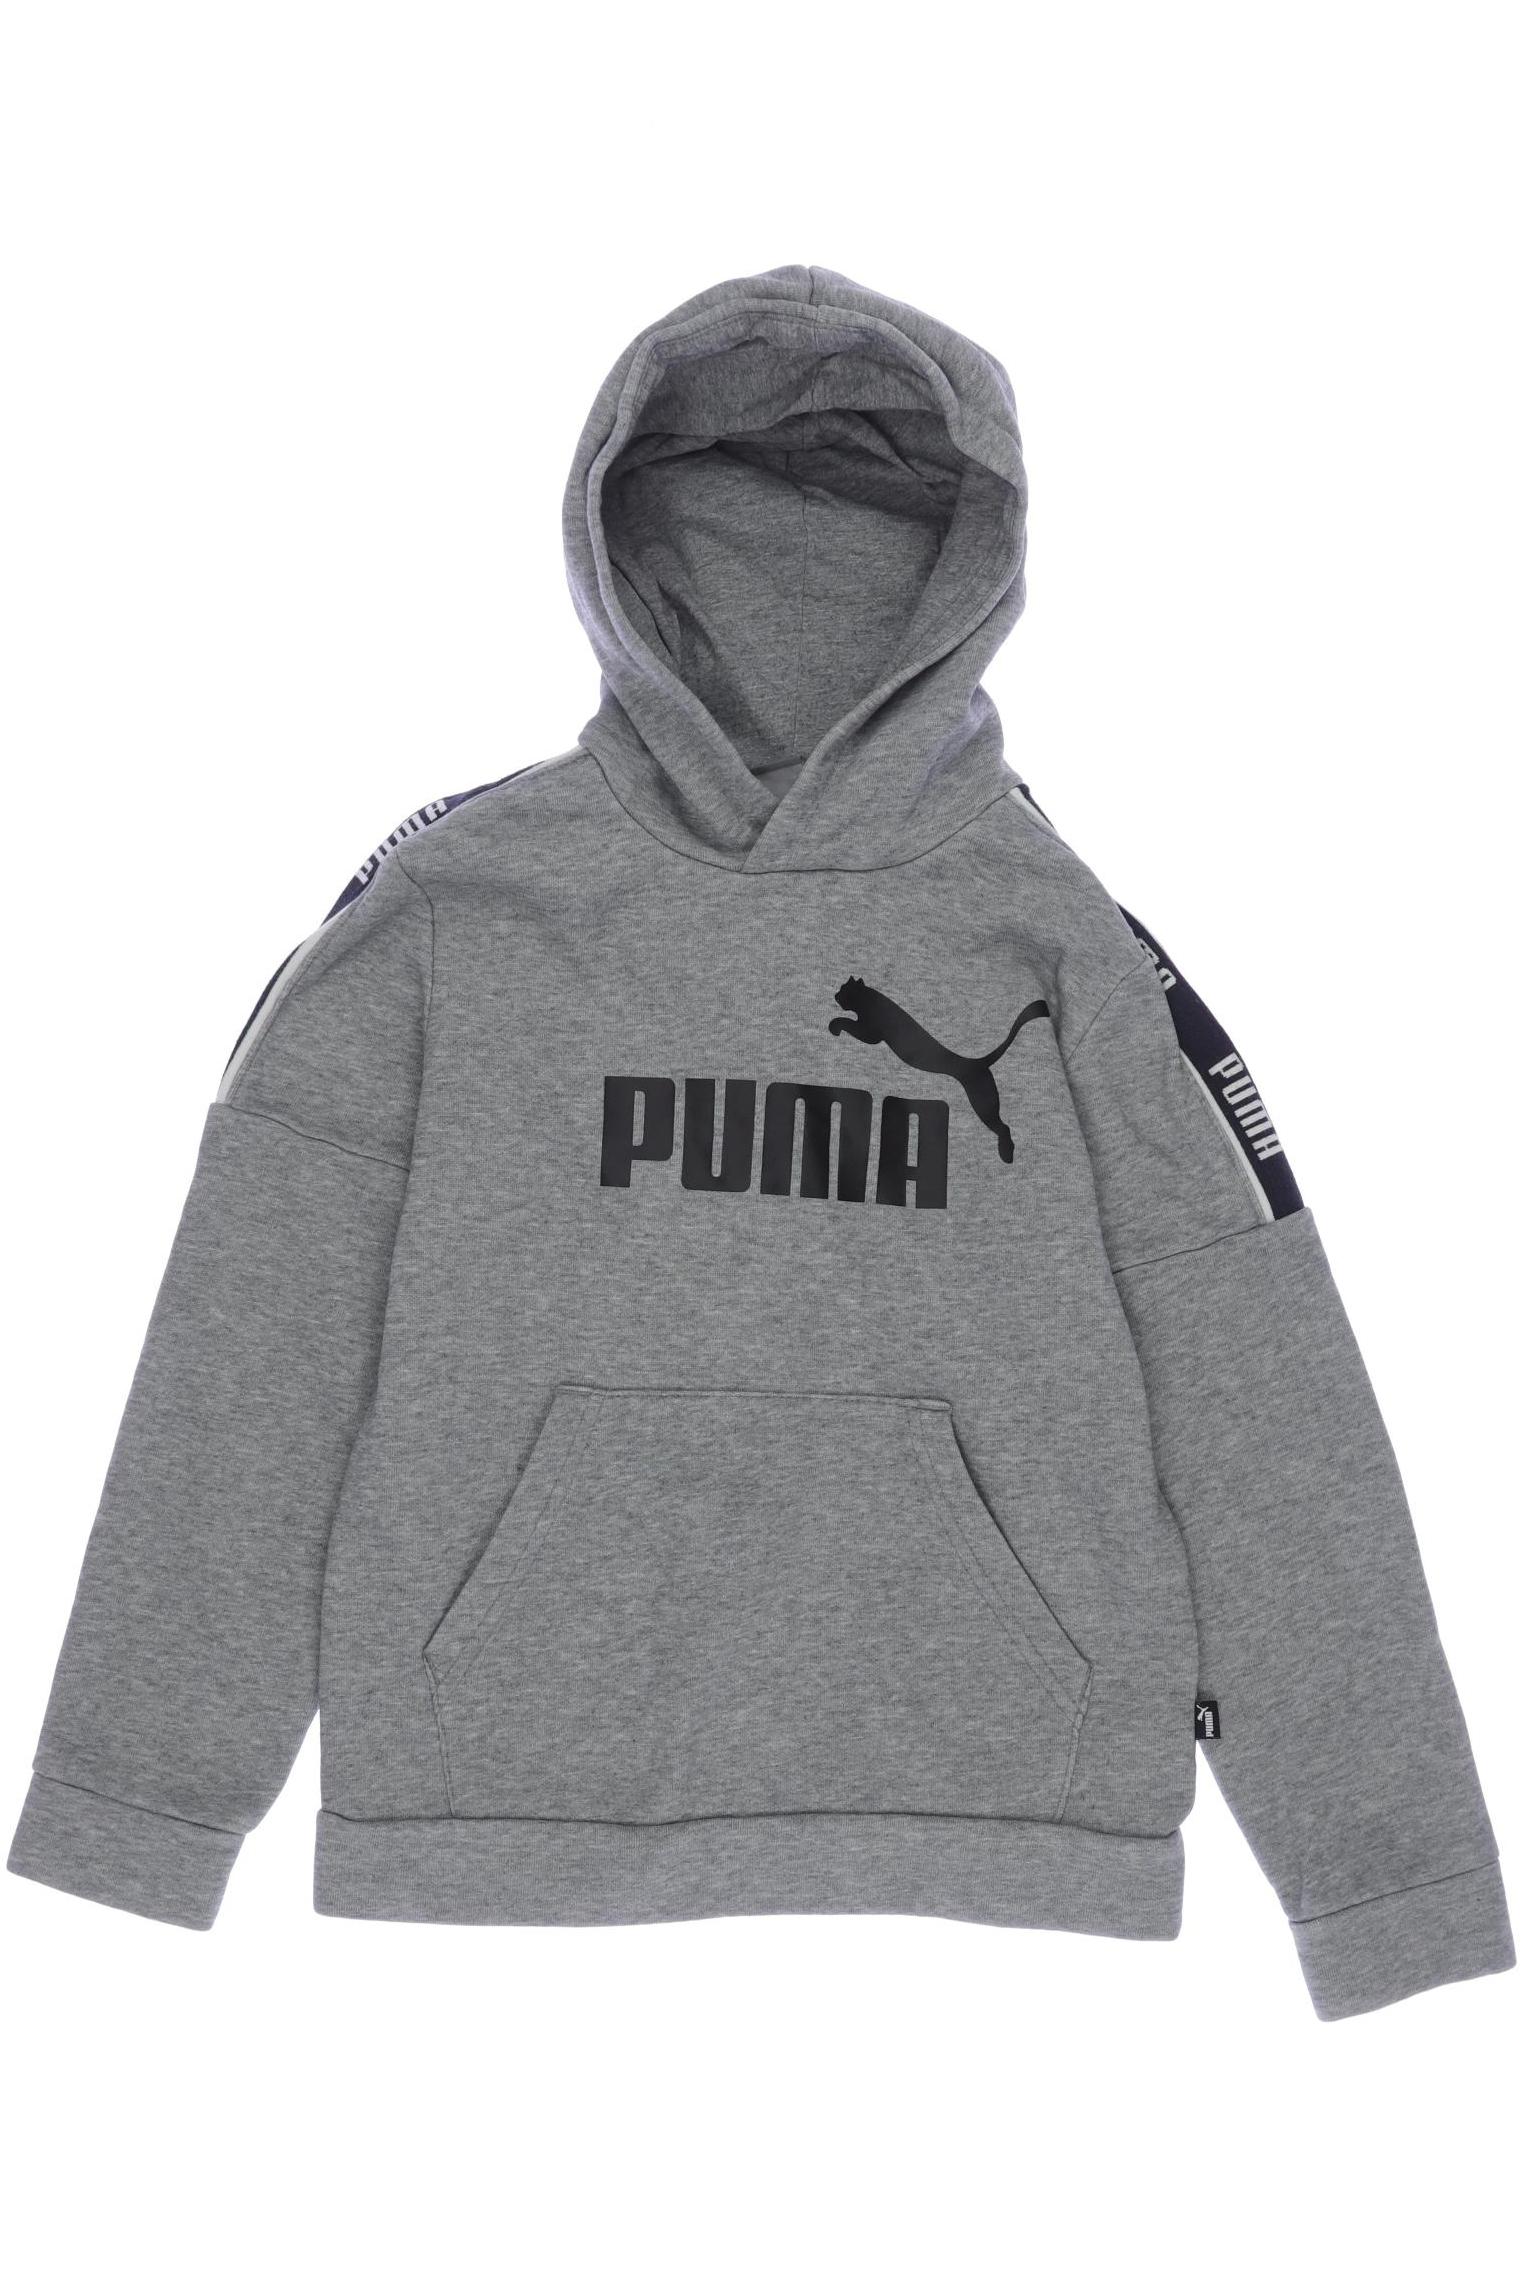 PUMA Jungen Hoodies & Sweater, grau von Puma